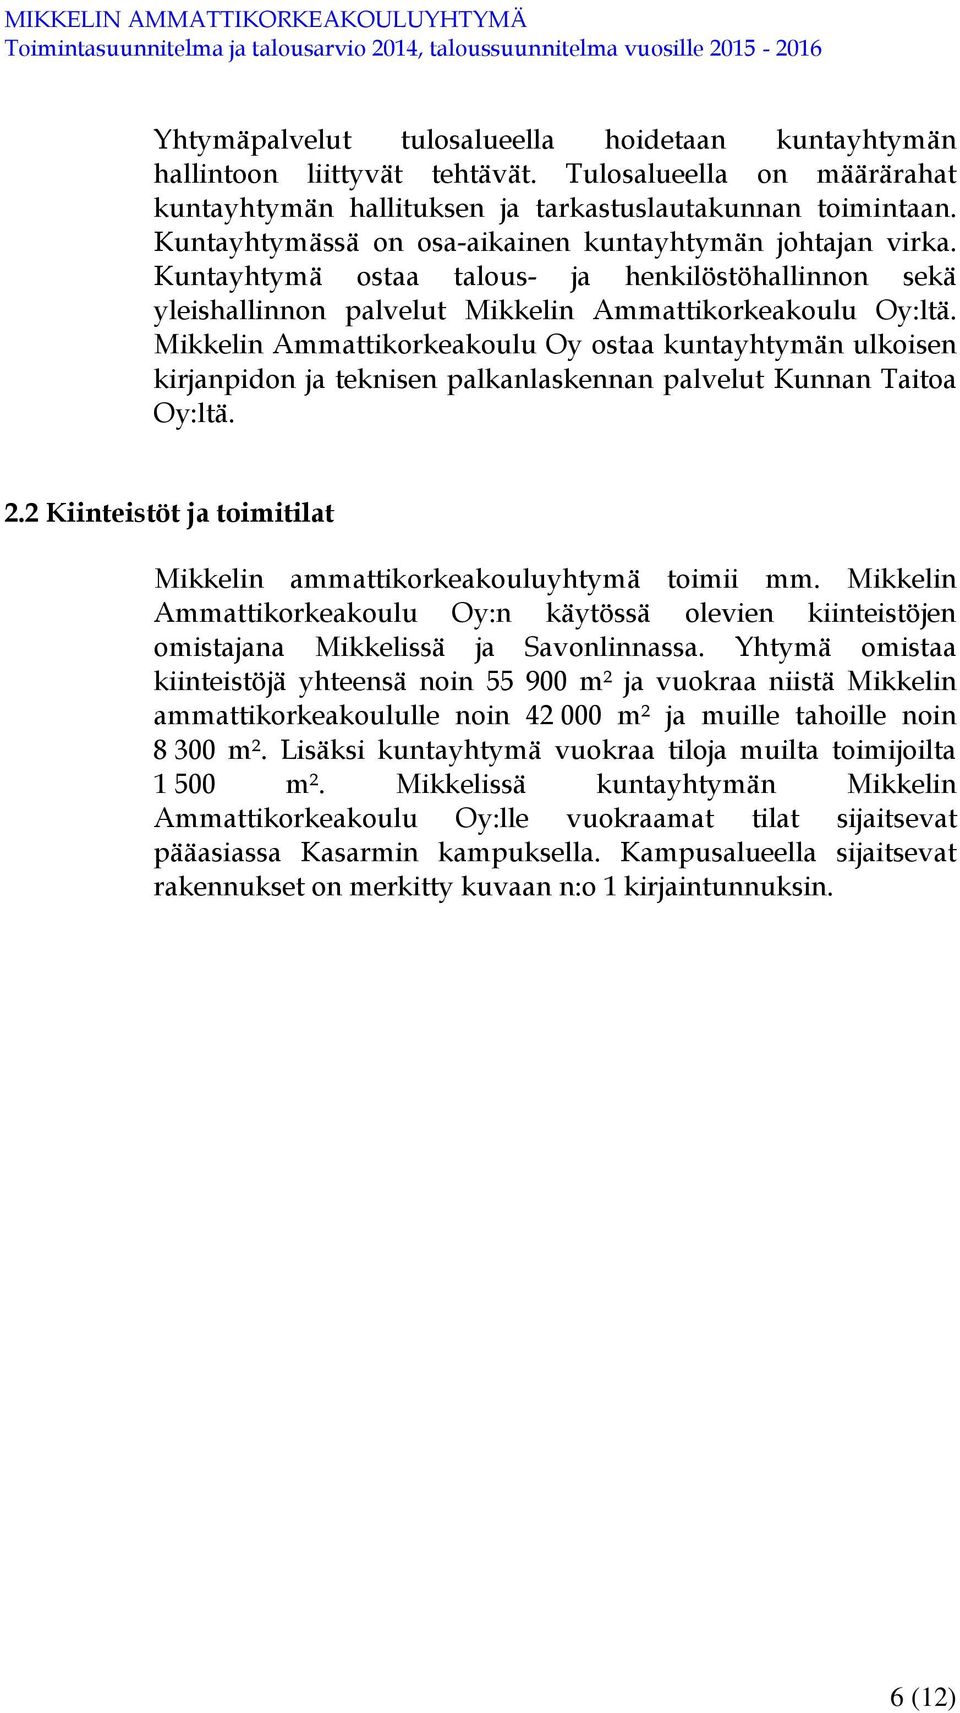 Mikkelin Ammattikorkeakoulu Oy ostaa kuntayhtymän ulkoisen kirjanpidon ja teknisen palkanlaskennan palvelut Kunnan Taitoa Oy:ltä. 2.